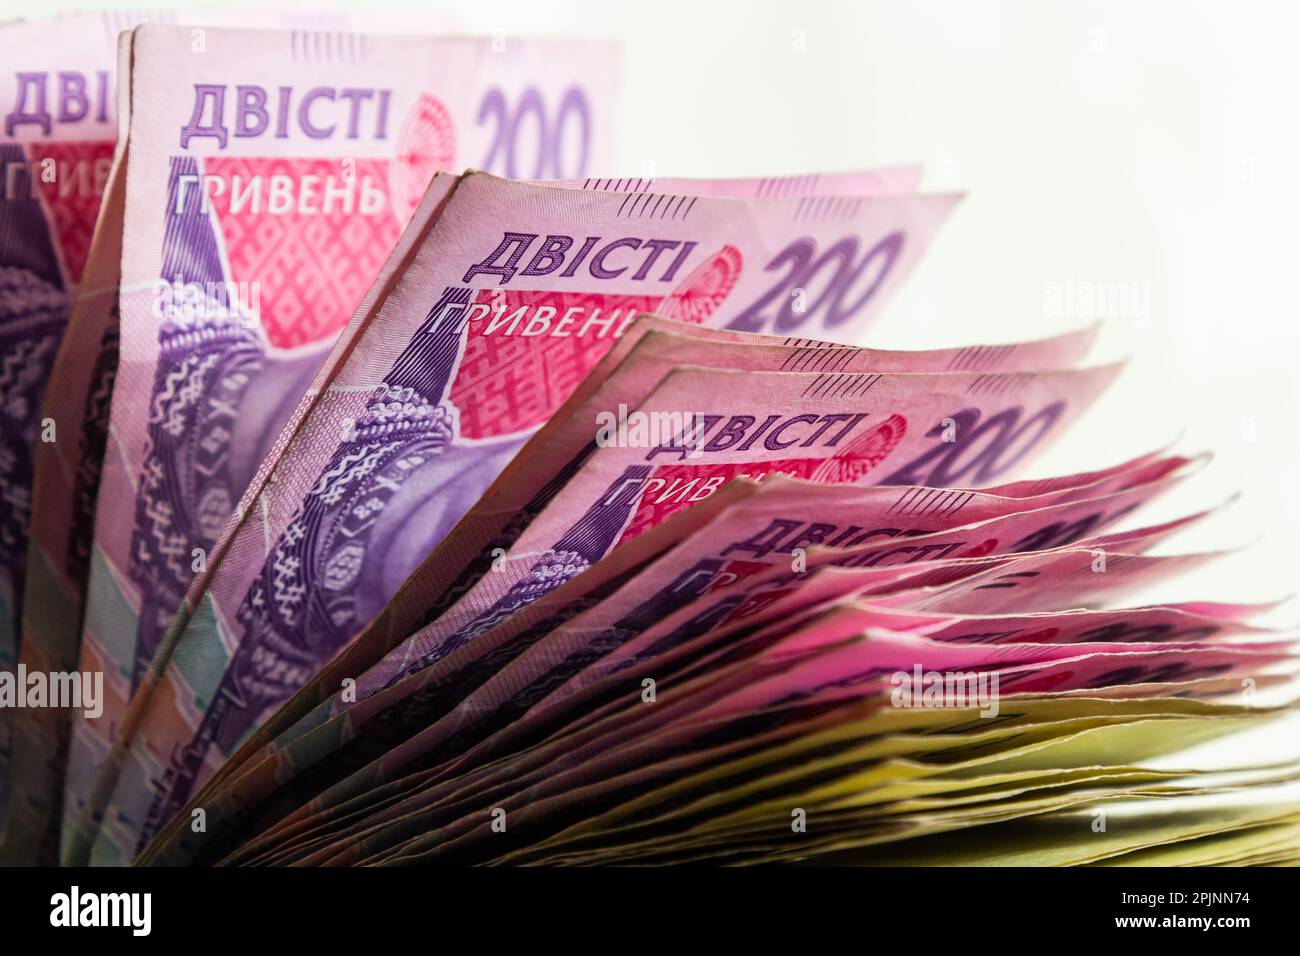 El papel moneda ucraniano se presenta sobre un fondo azul. billetes de 200 hryvnia. Foto de stock